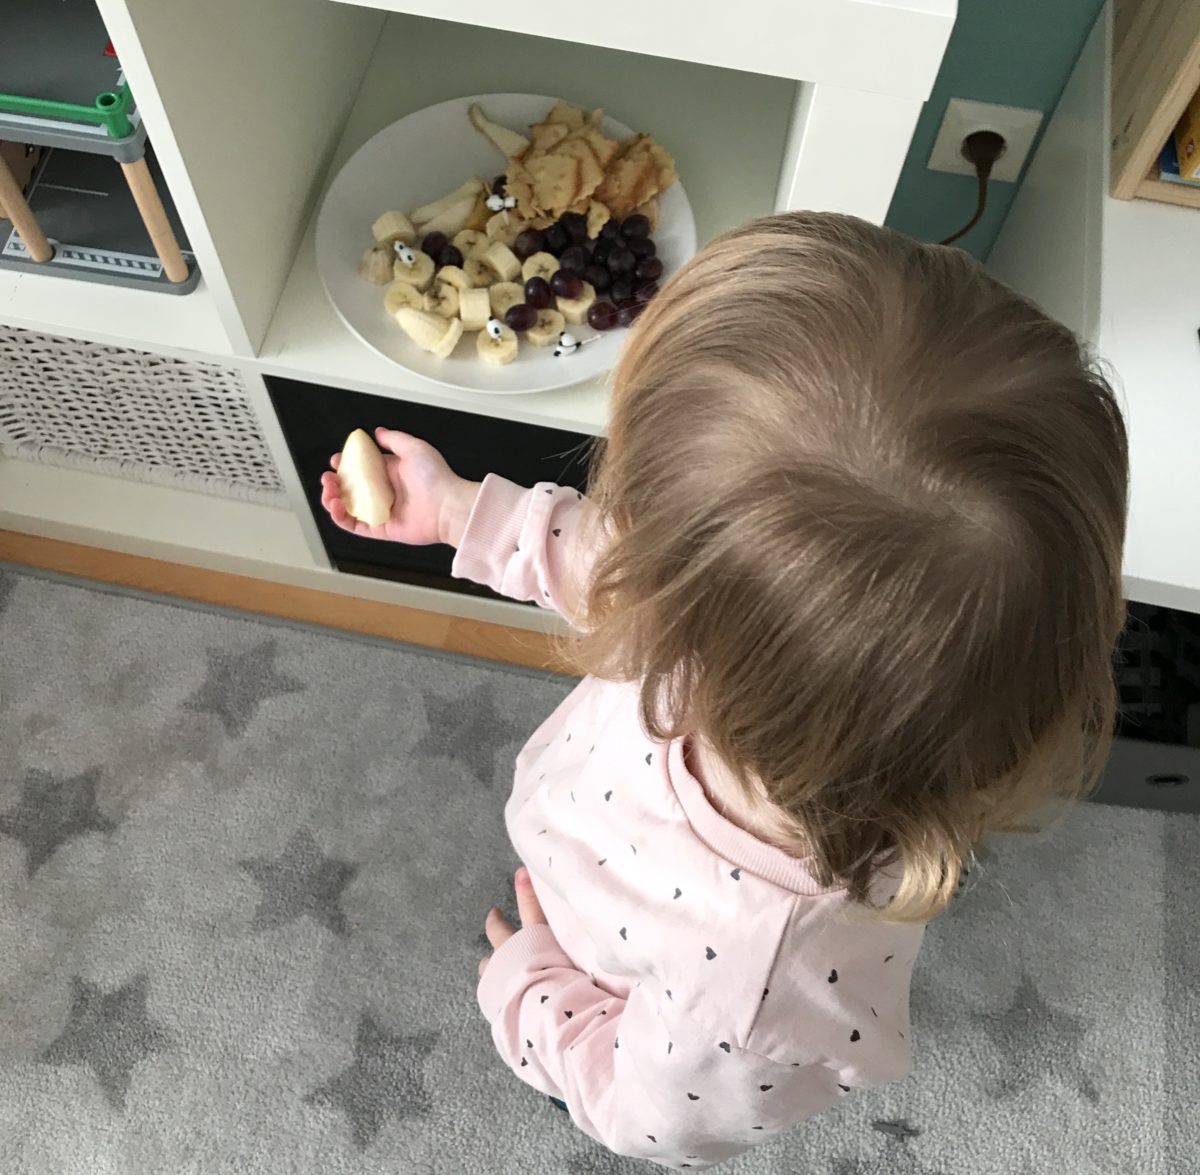 Obstteller im Kinderzimmer: Gesunde Snacks und Panda-Pieker - Mamaskind.de im Corona-Tagebuch